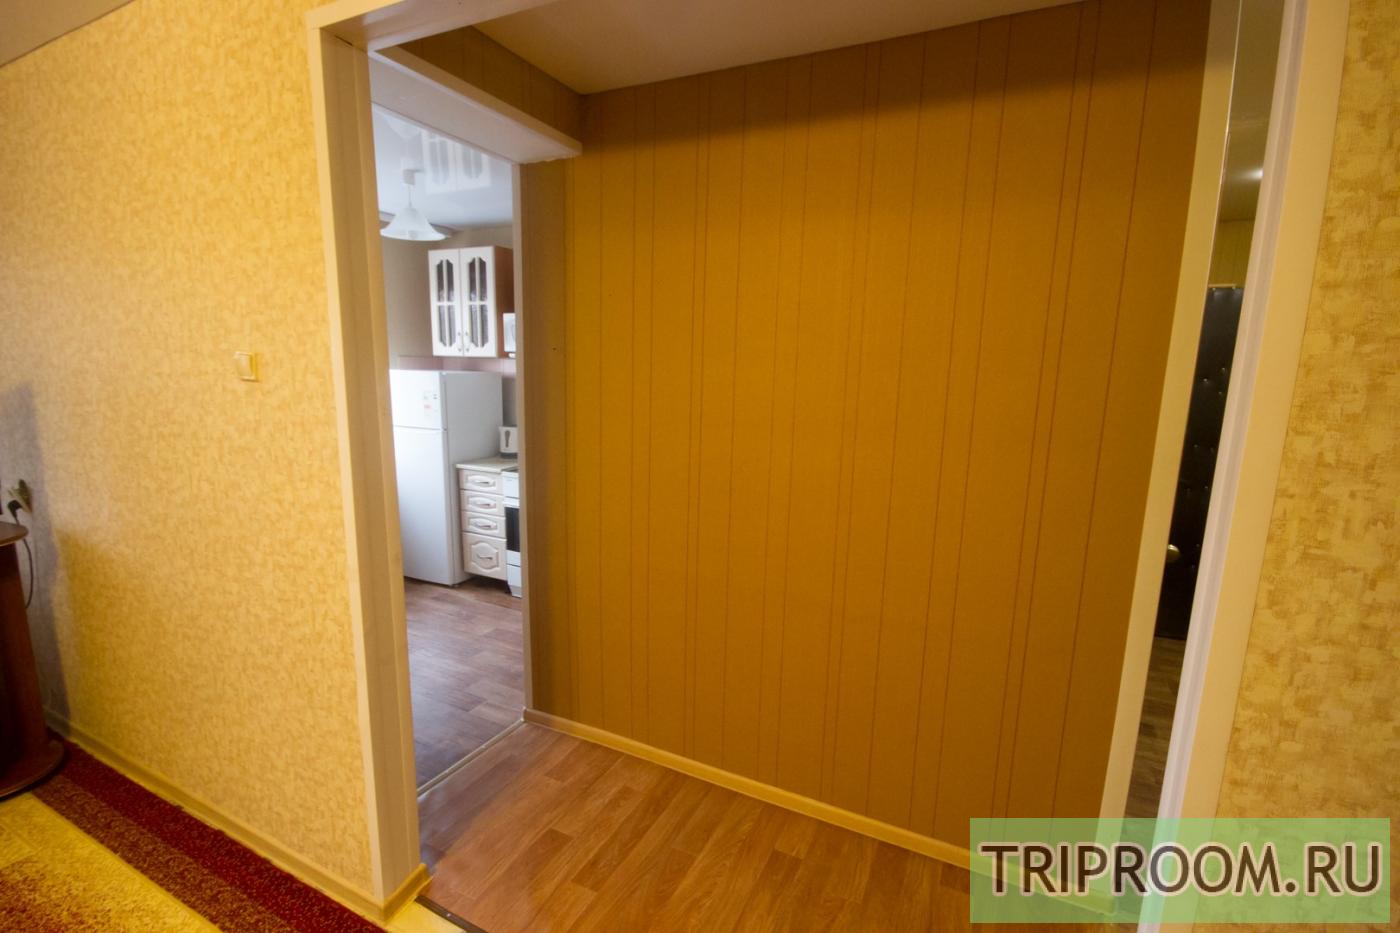 2-комнатная квартира посуточно (вариант № 5390), ул. Достоевского улица, фото № 12